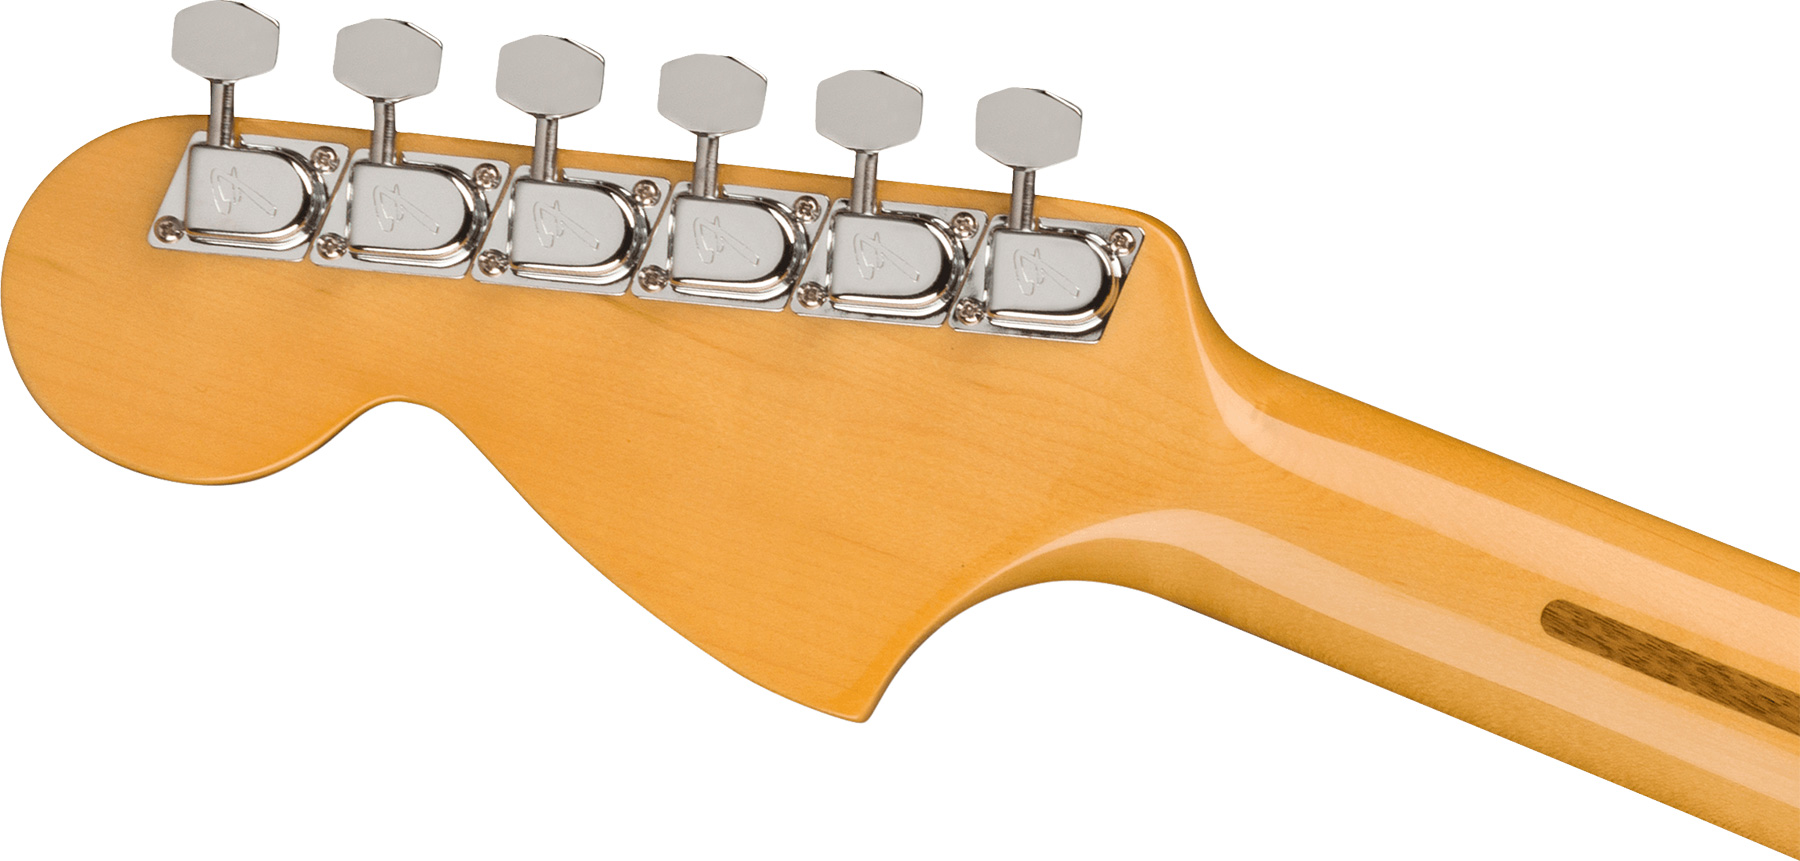 Fender Strat 1973 American Vintage Ii Usa 3s Trem Mn - Mocha - Guitare Électrique Forme Str - Variation 3